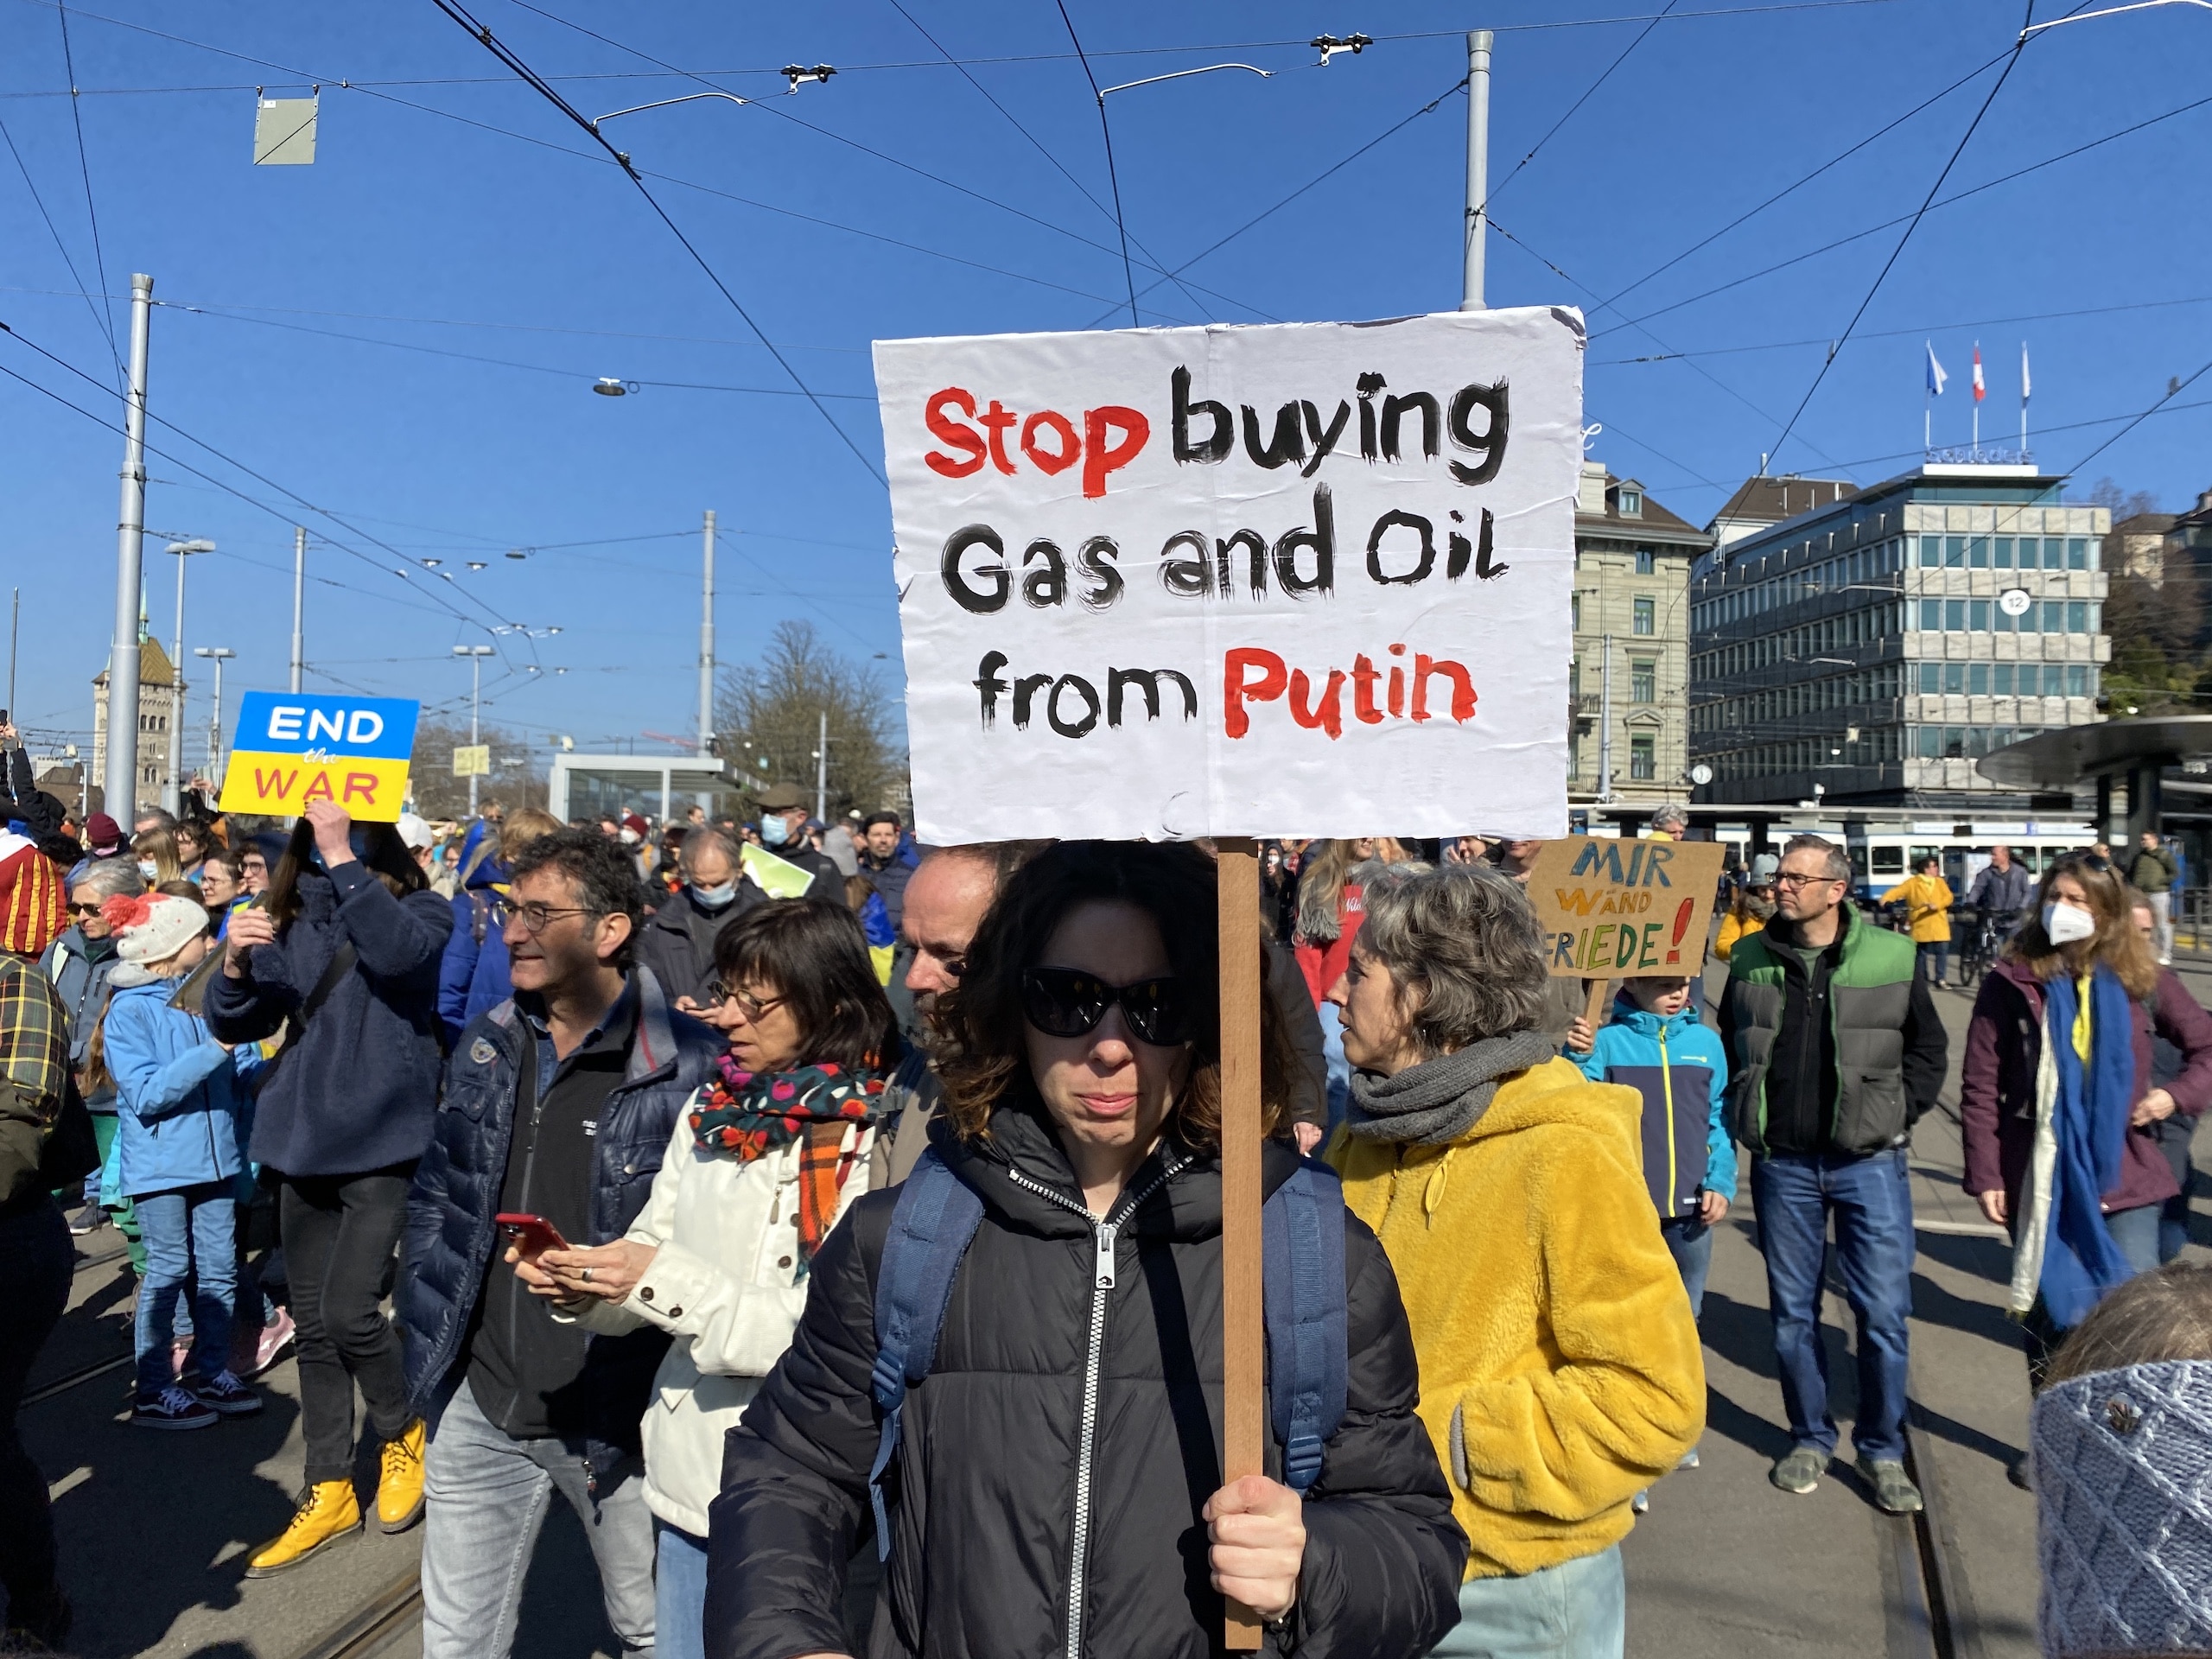 Хватит покупать нефть и газ у Путина (Stop Buying Gas and Oil from Putin). Цюрих, 5 марта 2022 г. (© schwingen.net)